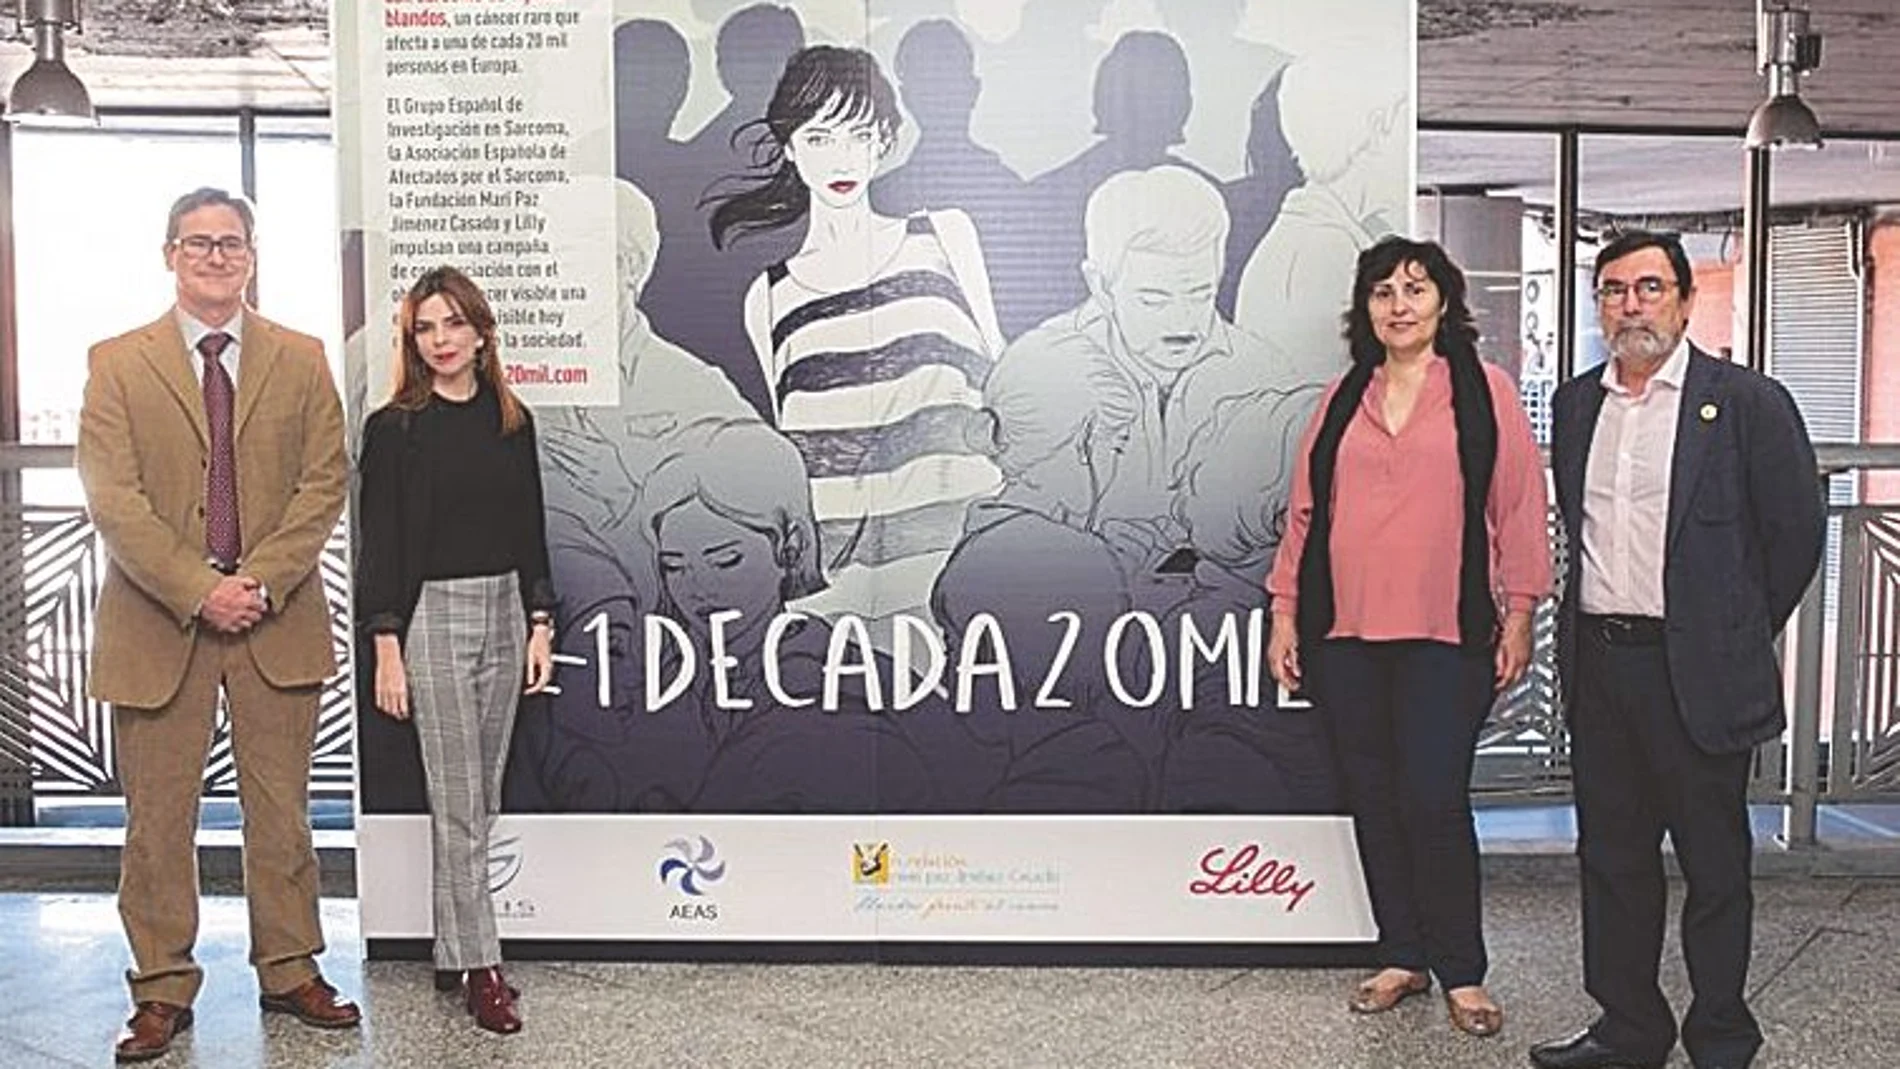 Dentro de la campaña #1deCada20mil se incluyó la exhibición en la estación de Atocha de Madrid, coincidiendo con el Día Nacional de la enfermedad, de un dibujo firmado por la ilustradora Sara Herranz y elaborado a partir del testimonio de una paciente con sarcoma avanzado de tejidos blandos que simboliza la convivencia con el tumor.